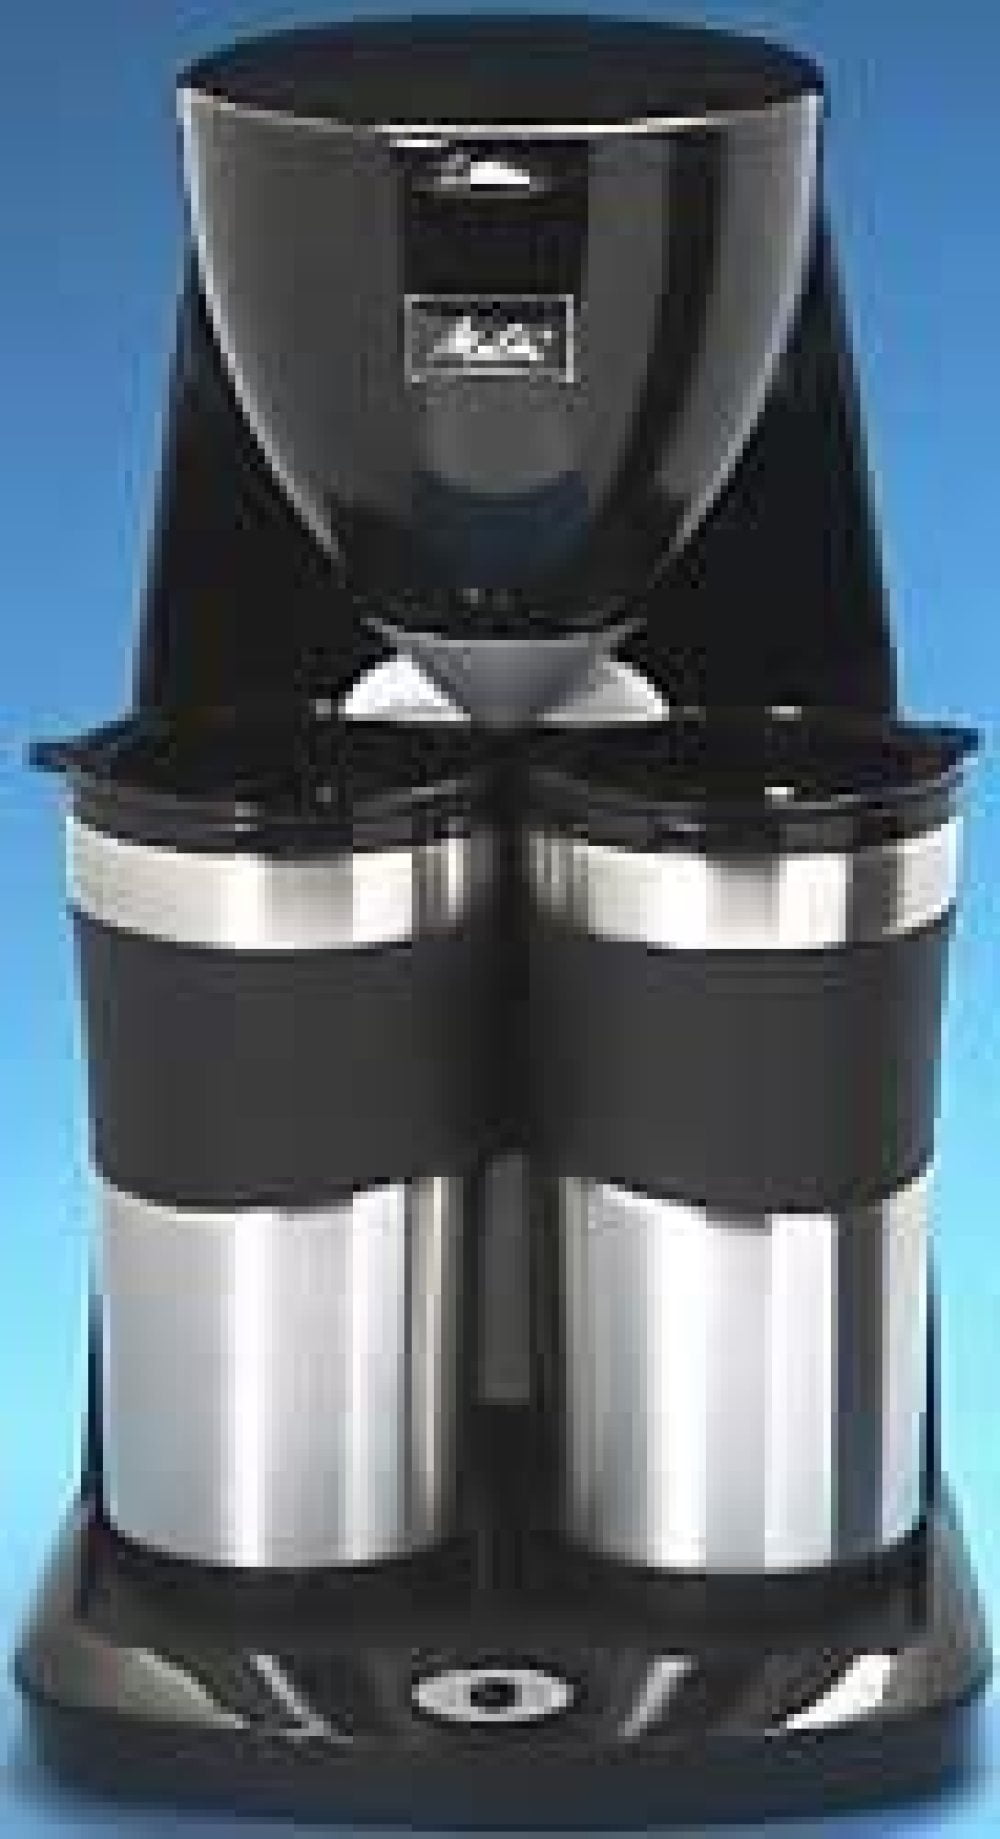 Maxim Dual Travel Mug Coffee Maker BHBU0503A238